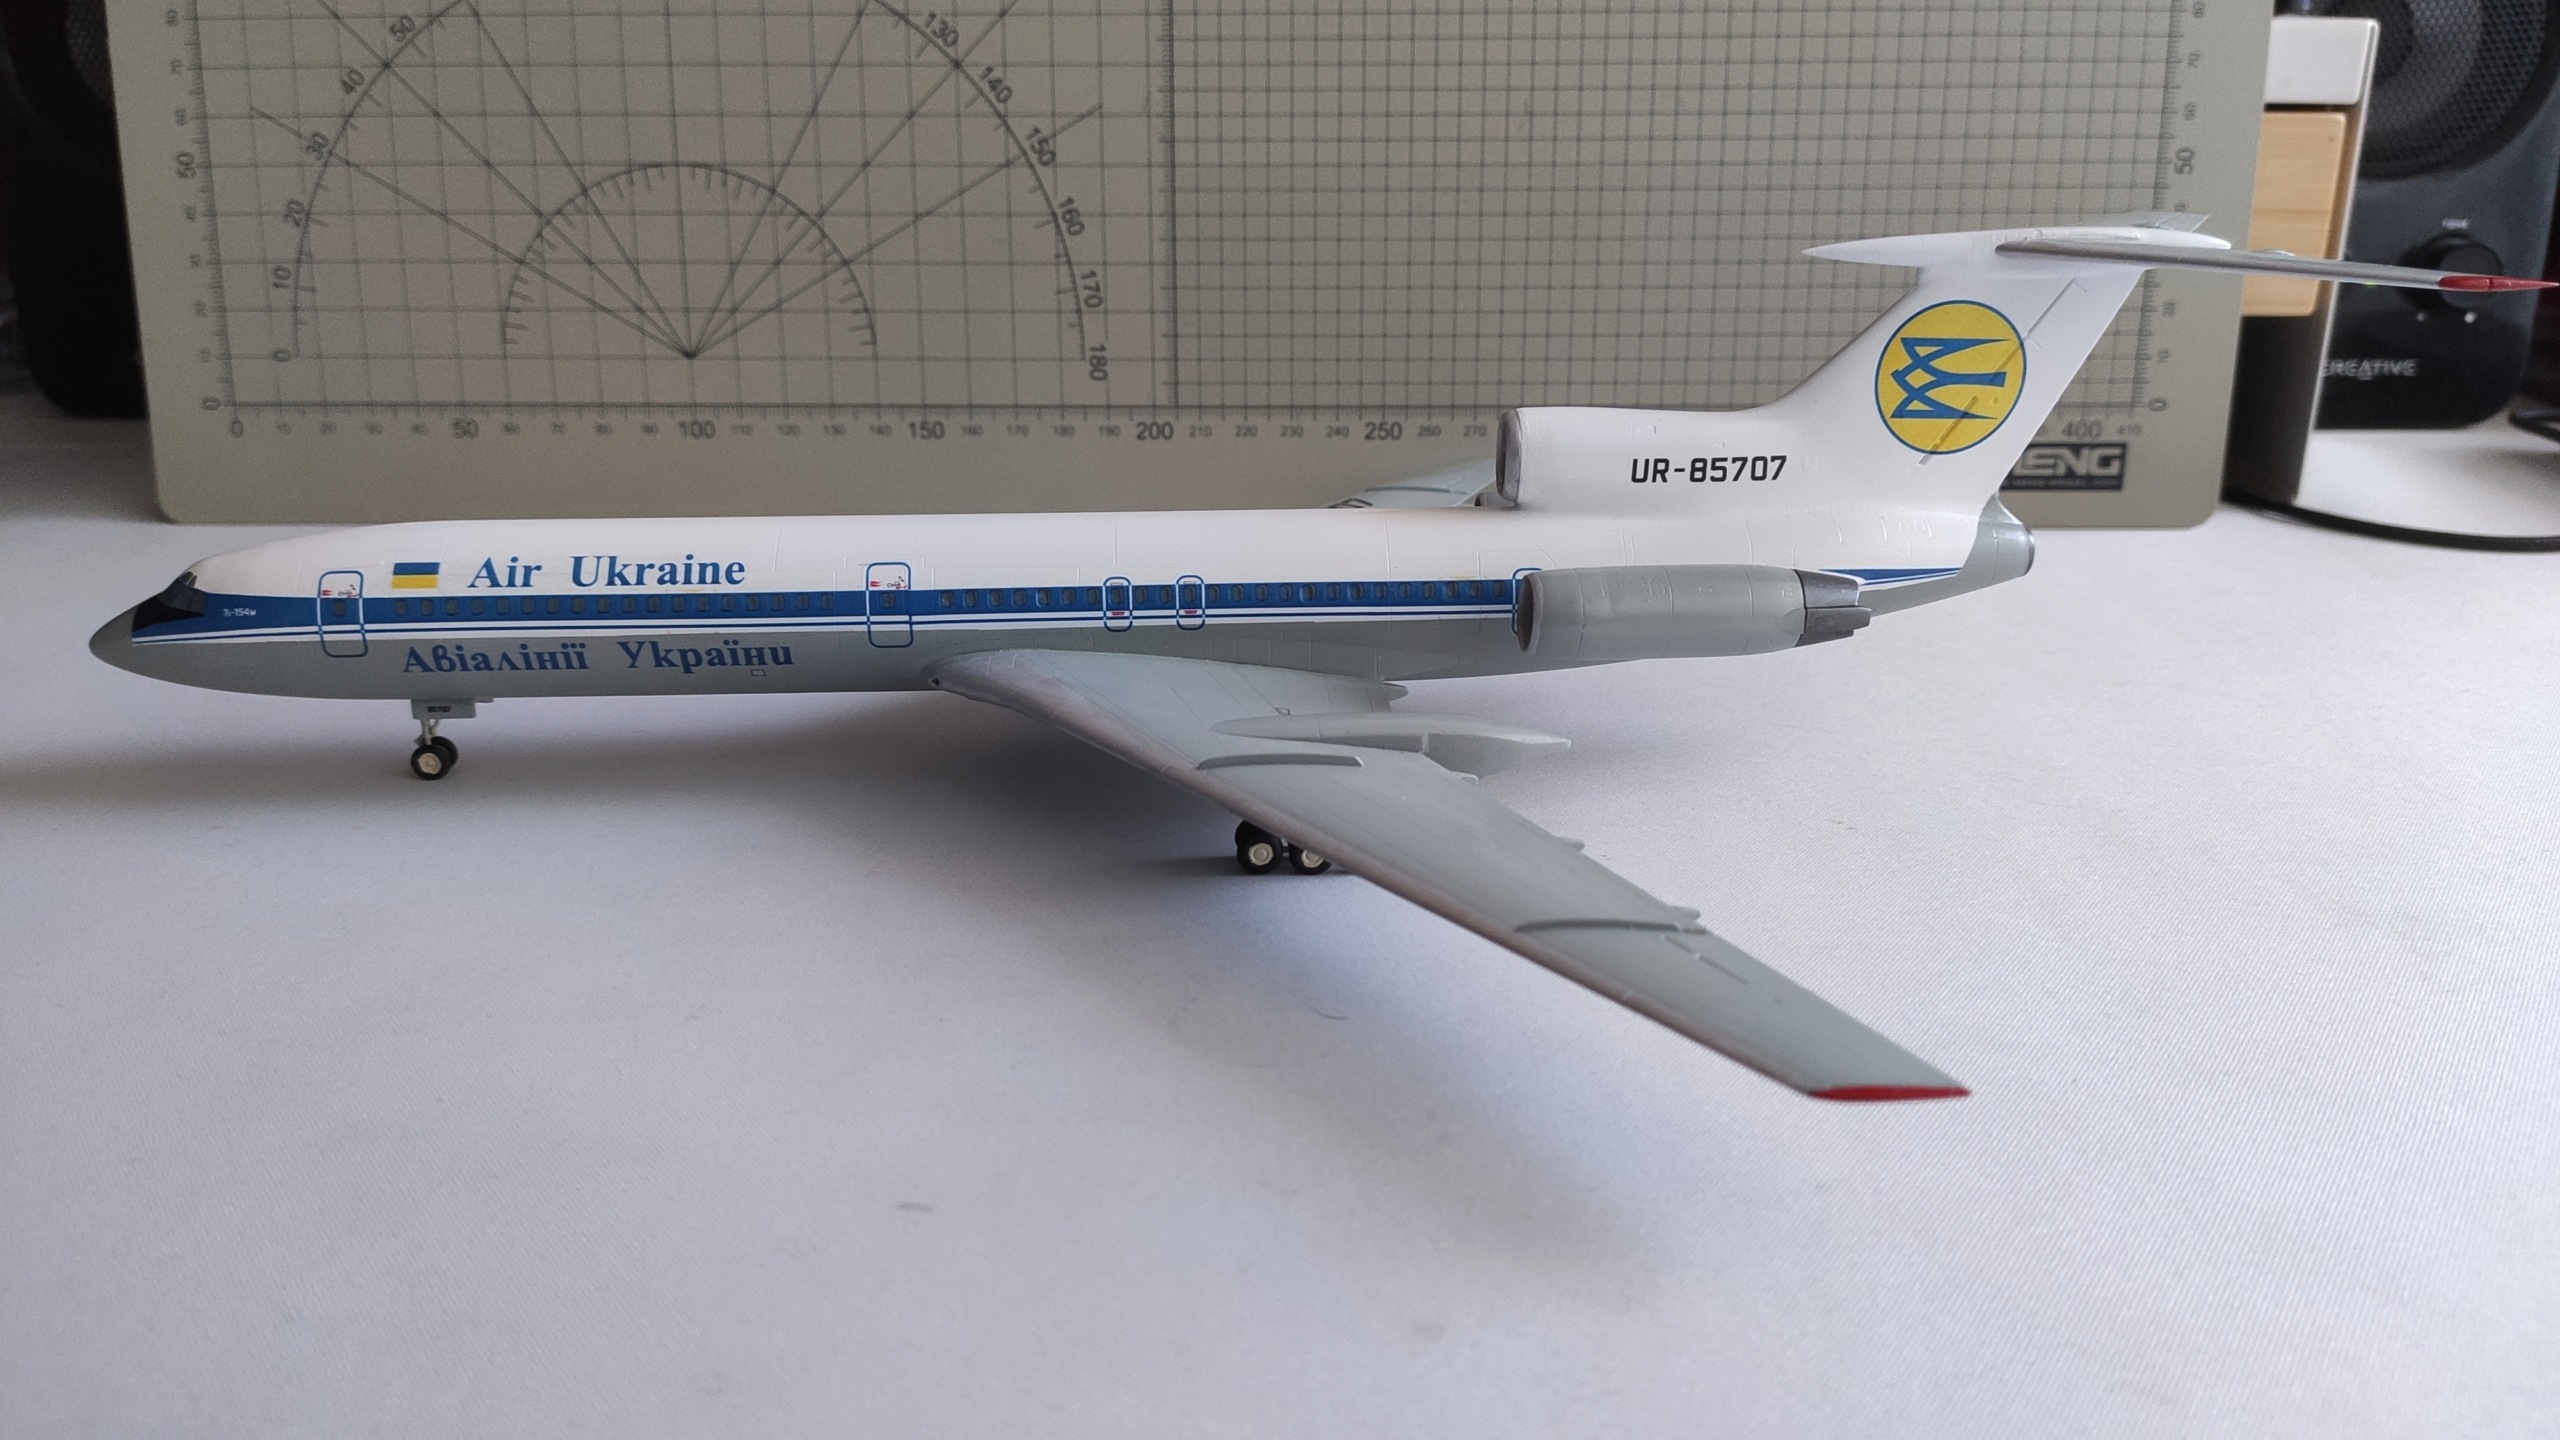 [Zvezda] 1/144 - Tupolev Tu-154M Air Ukraine  17138917